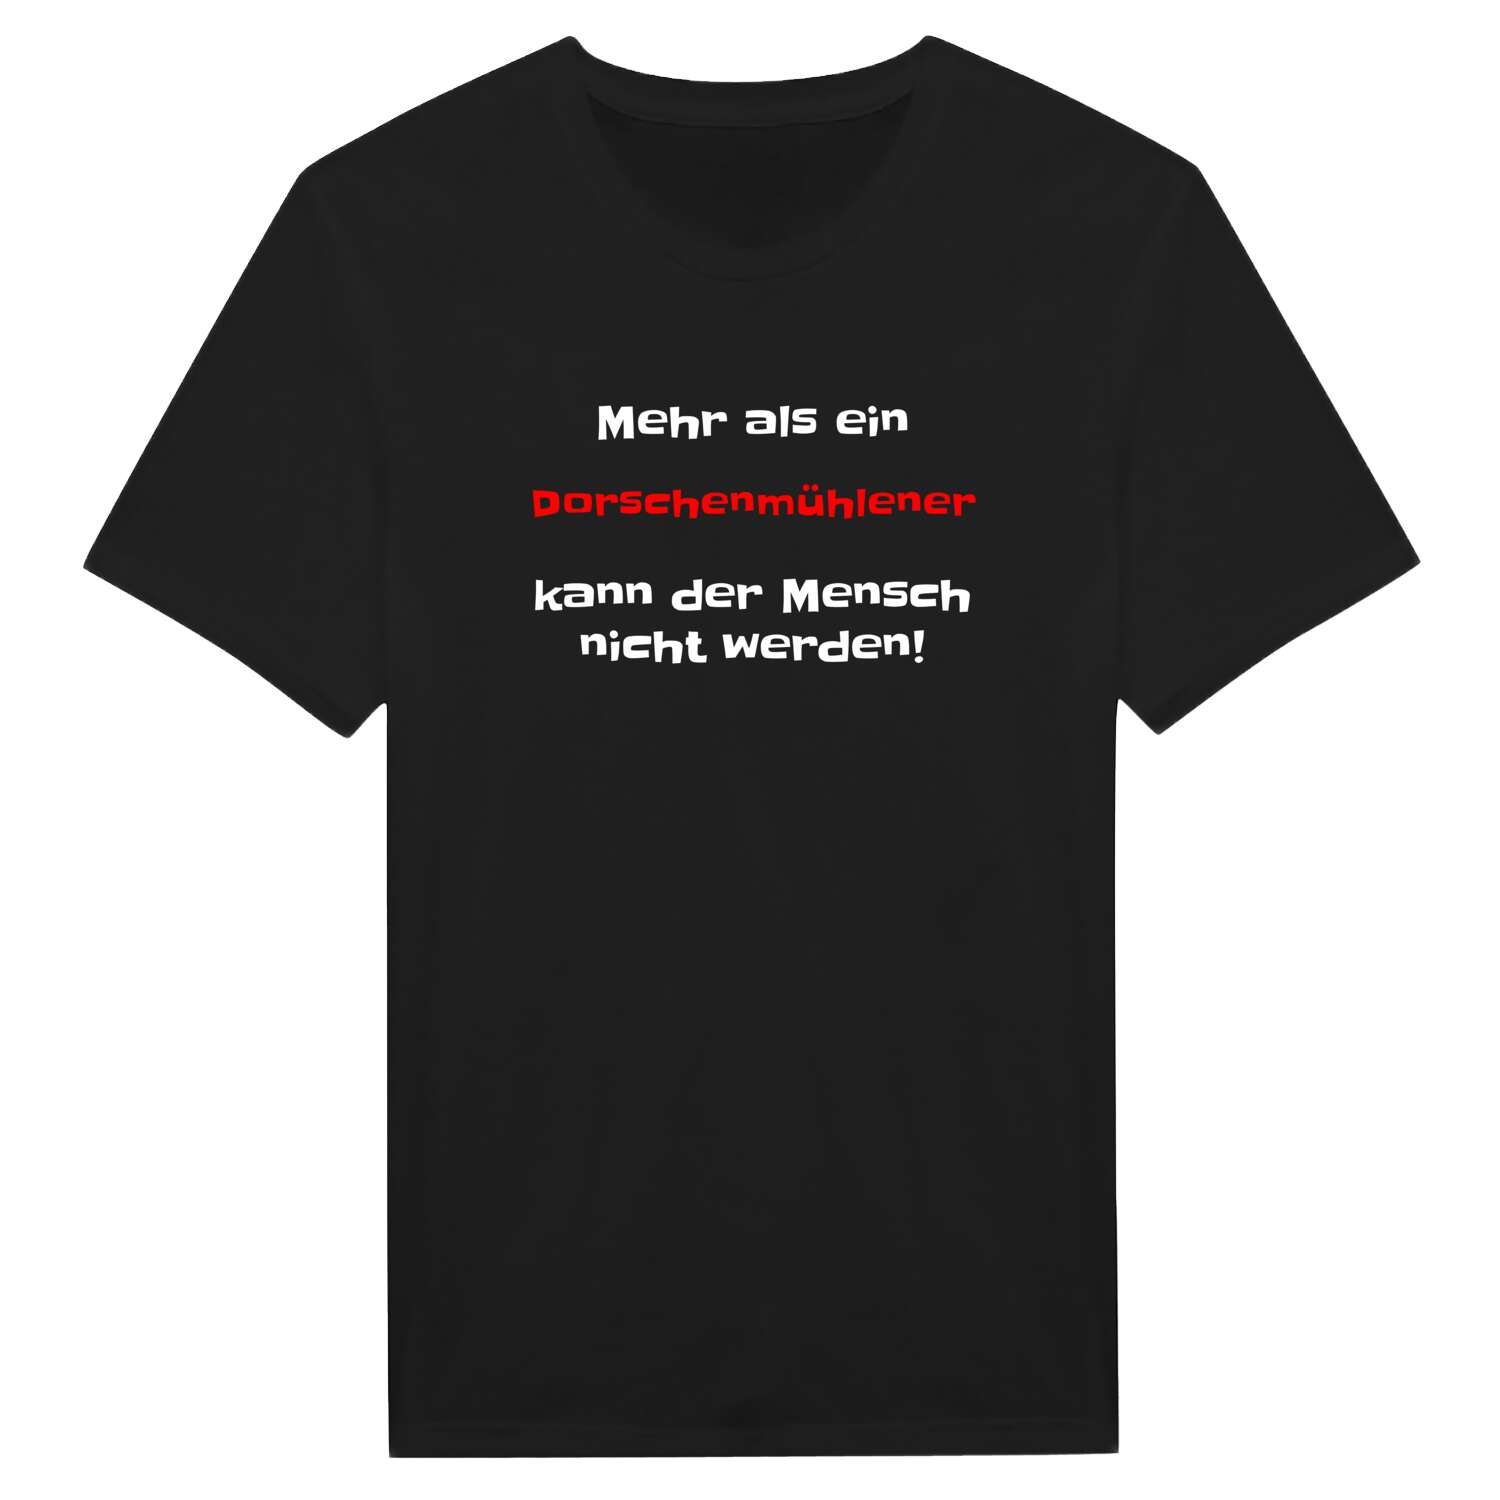 Dorschenmühle T-Shirt »Mehr als ein«